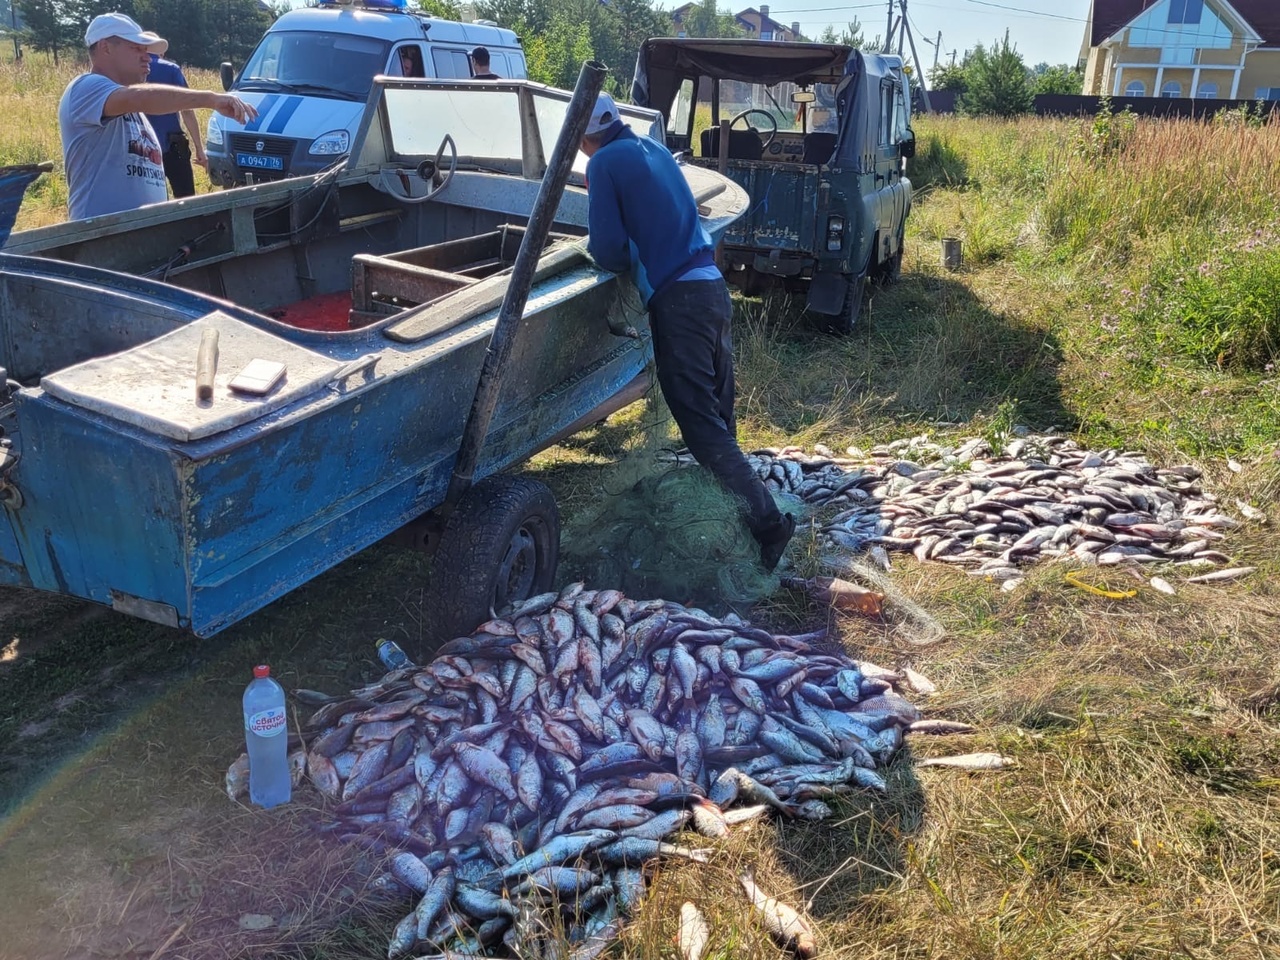 Свыше 2 тысяч хвостов судака, леща и плотвы изъяли у браконьера сотрудники ярославской рыбоохраны совместно с полицией